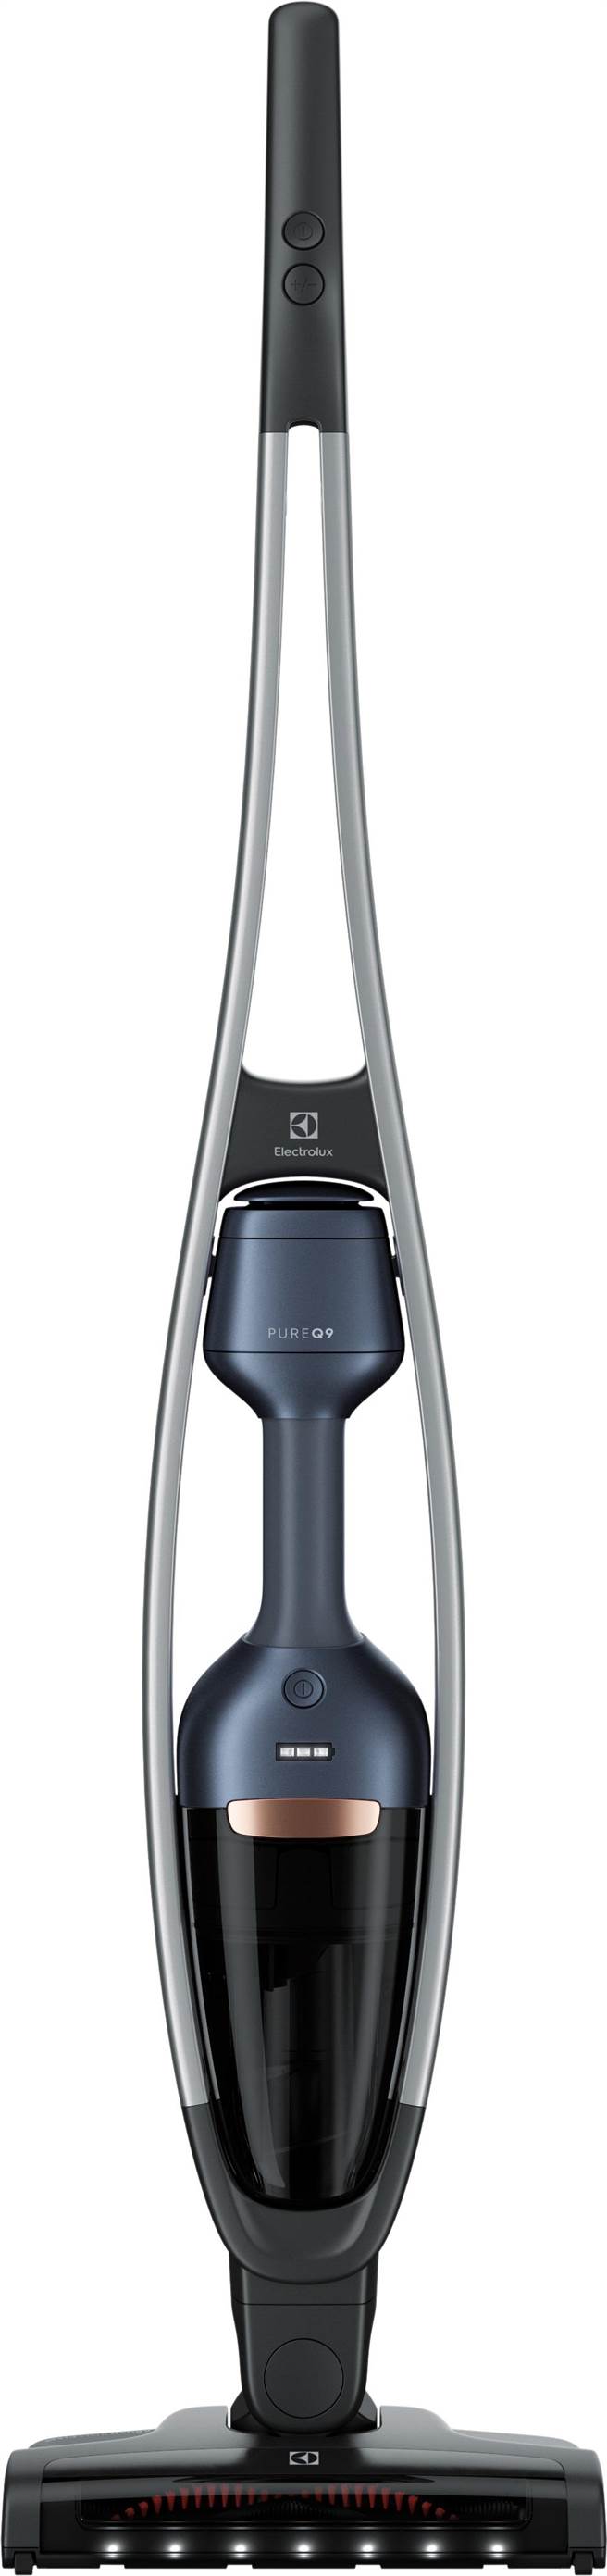 伊萊克斯PURE Q9強效靜頻吸塵器，共恬靜白、沉靜藍、靜謐棕 3色，1萬9900元起。（伊萊克斯提供）